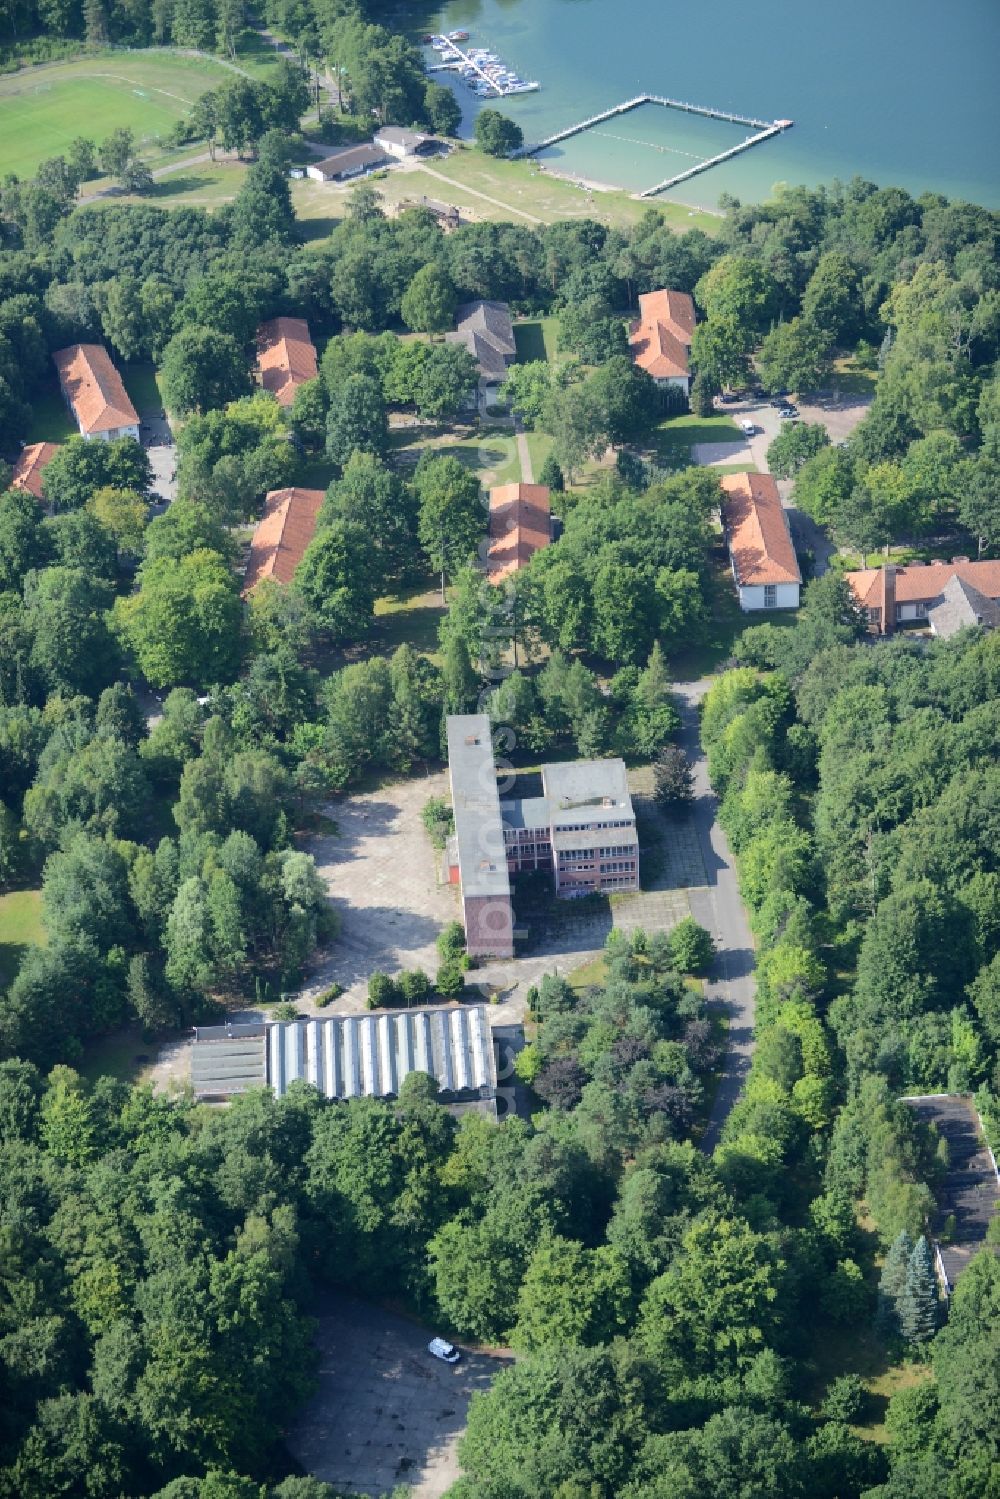 Aerial image Joachimsthal - Leisure Centre - Amusement Park Europaeische Jugenderholungs- und Begegnungsstaette Werbellinsee in Joachimsthal in the state Brandenburg